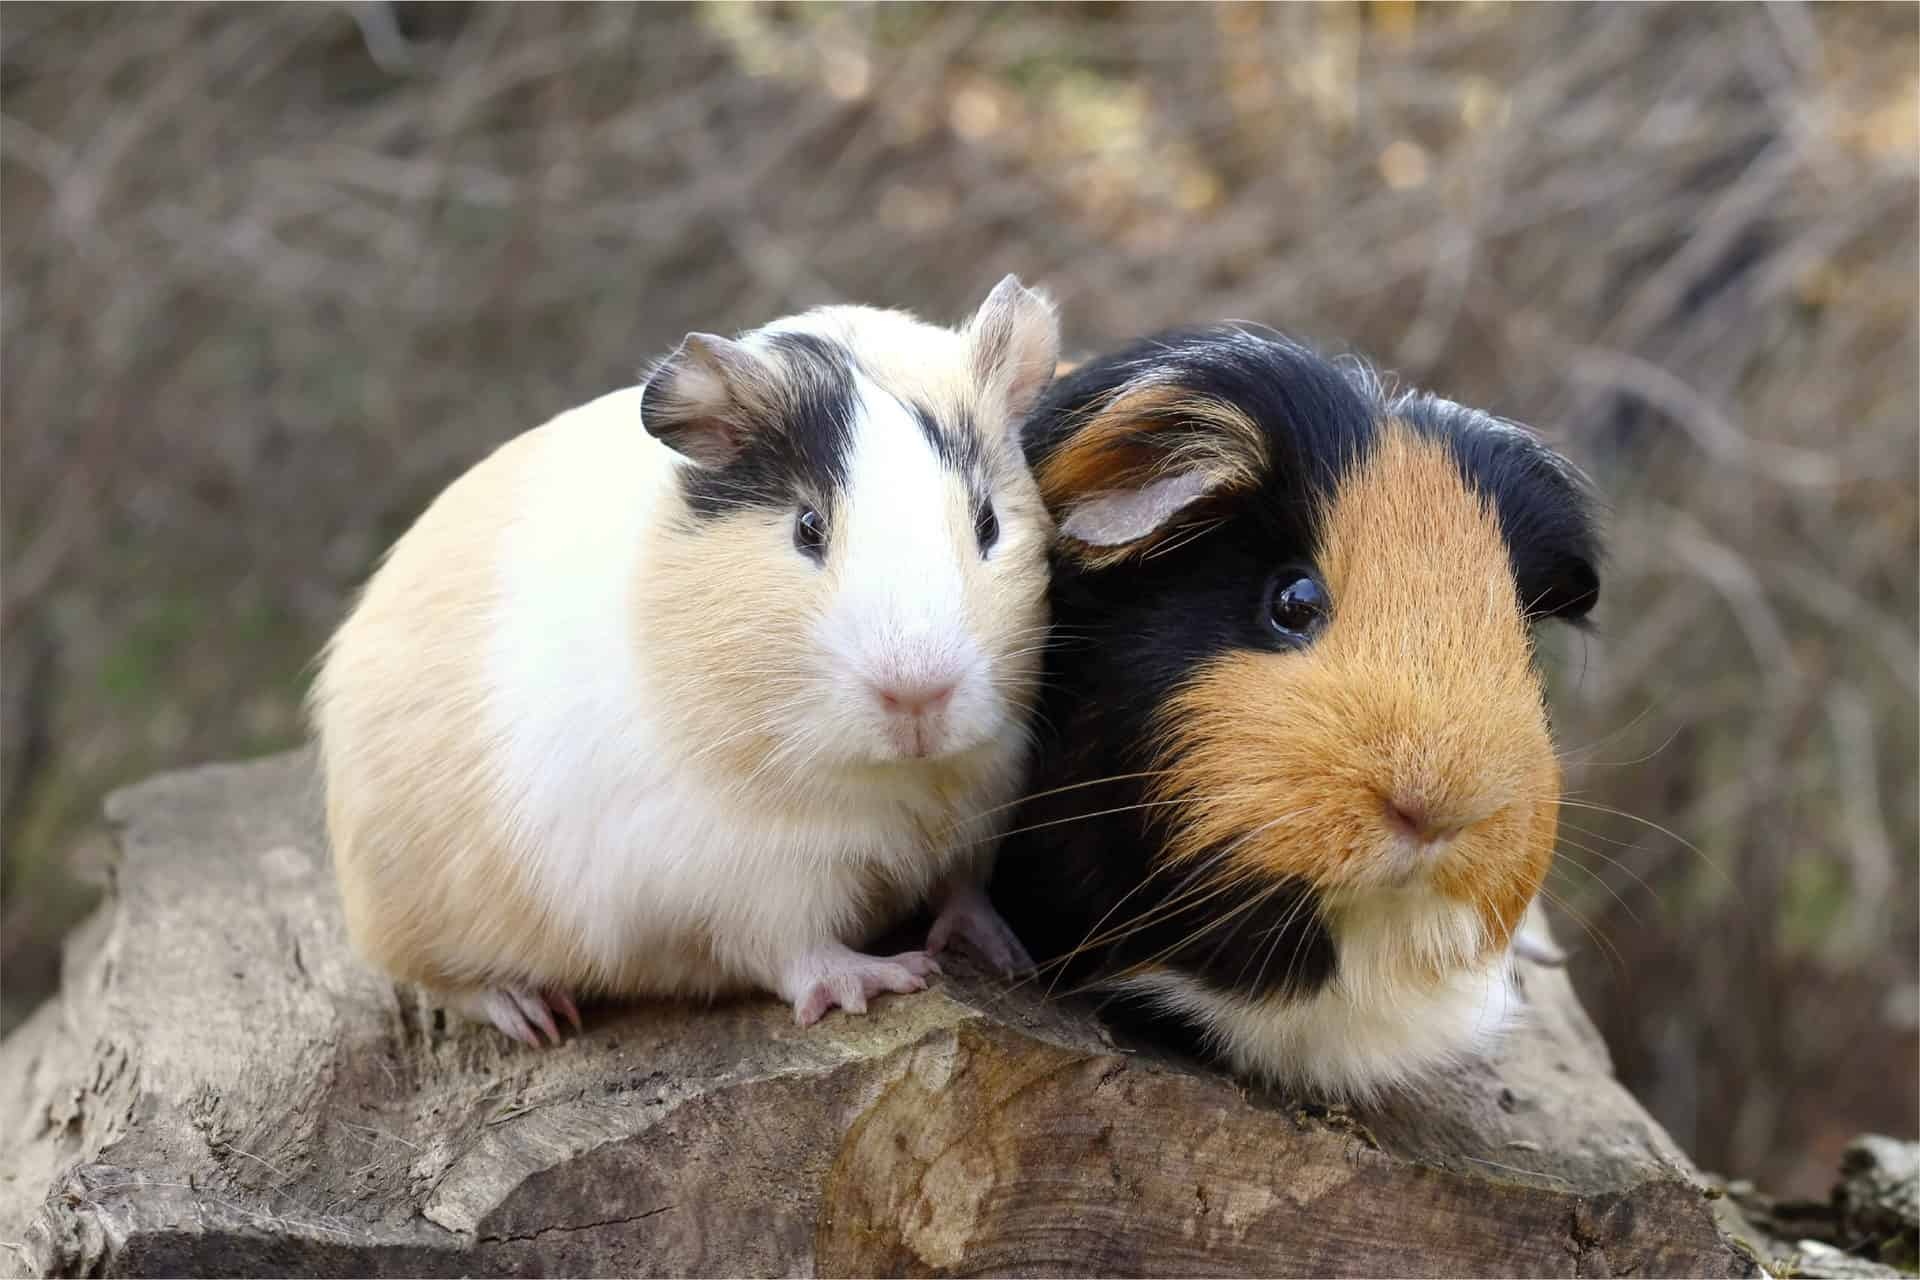 Guinea pig companionship, Bonding guinea pigs, Guinea pig handling, Pet care tips, 1920x1280 HD Desktop